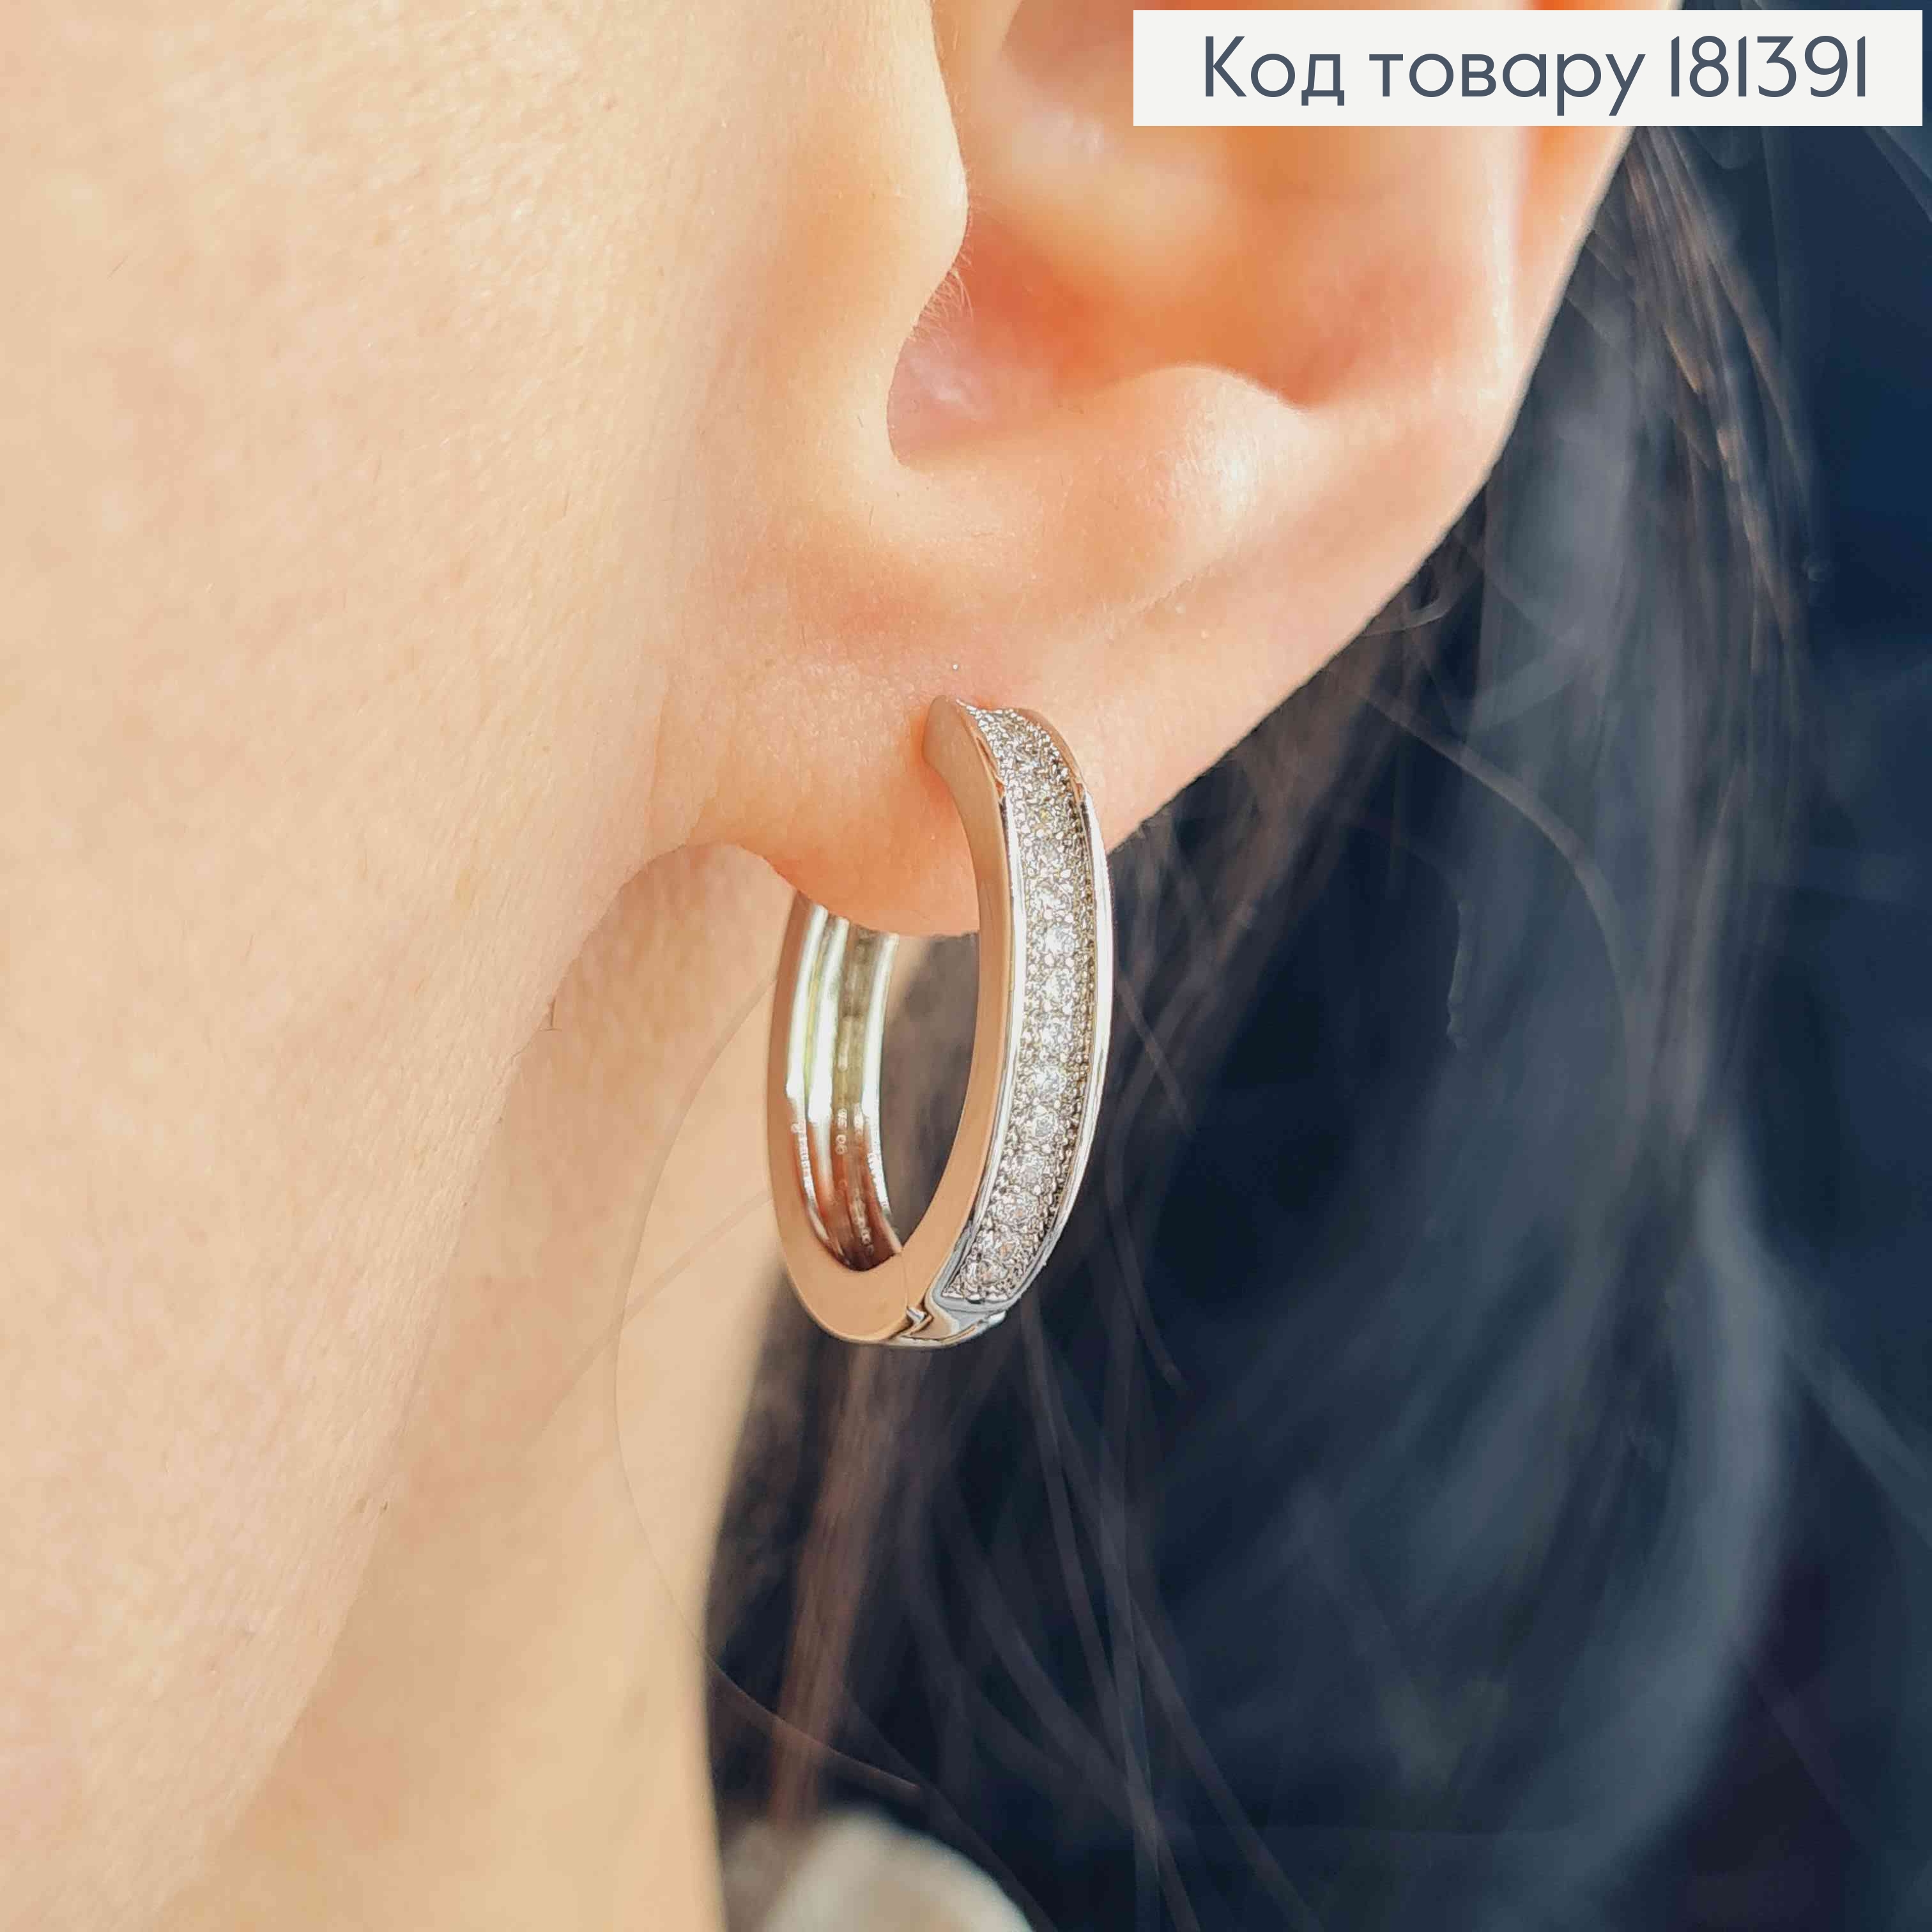 Серьги родовые, кольца 2см, с рядочком камешков, Xuping 181391 фото 2